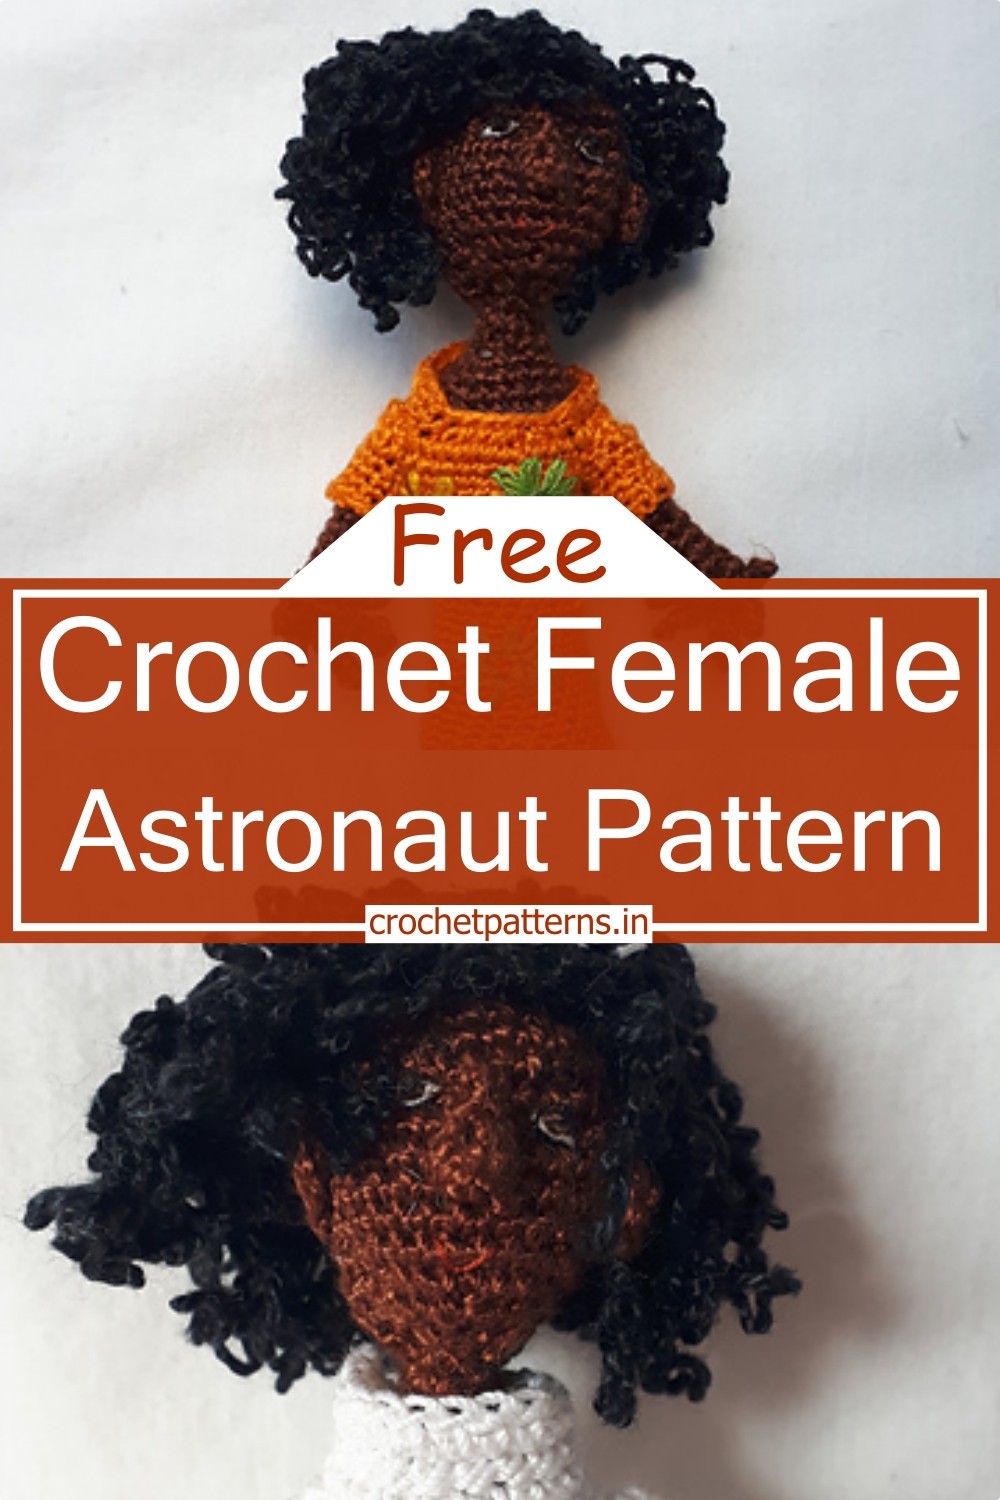 Crochet Female Astronaut Pattern